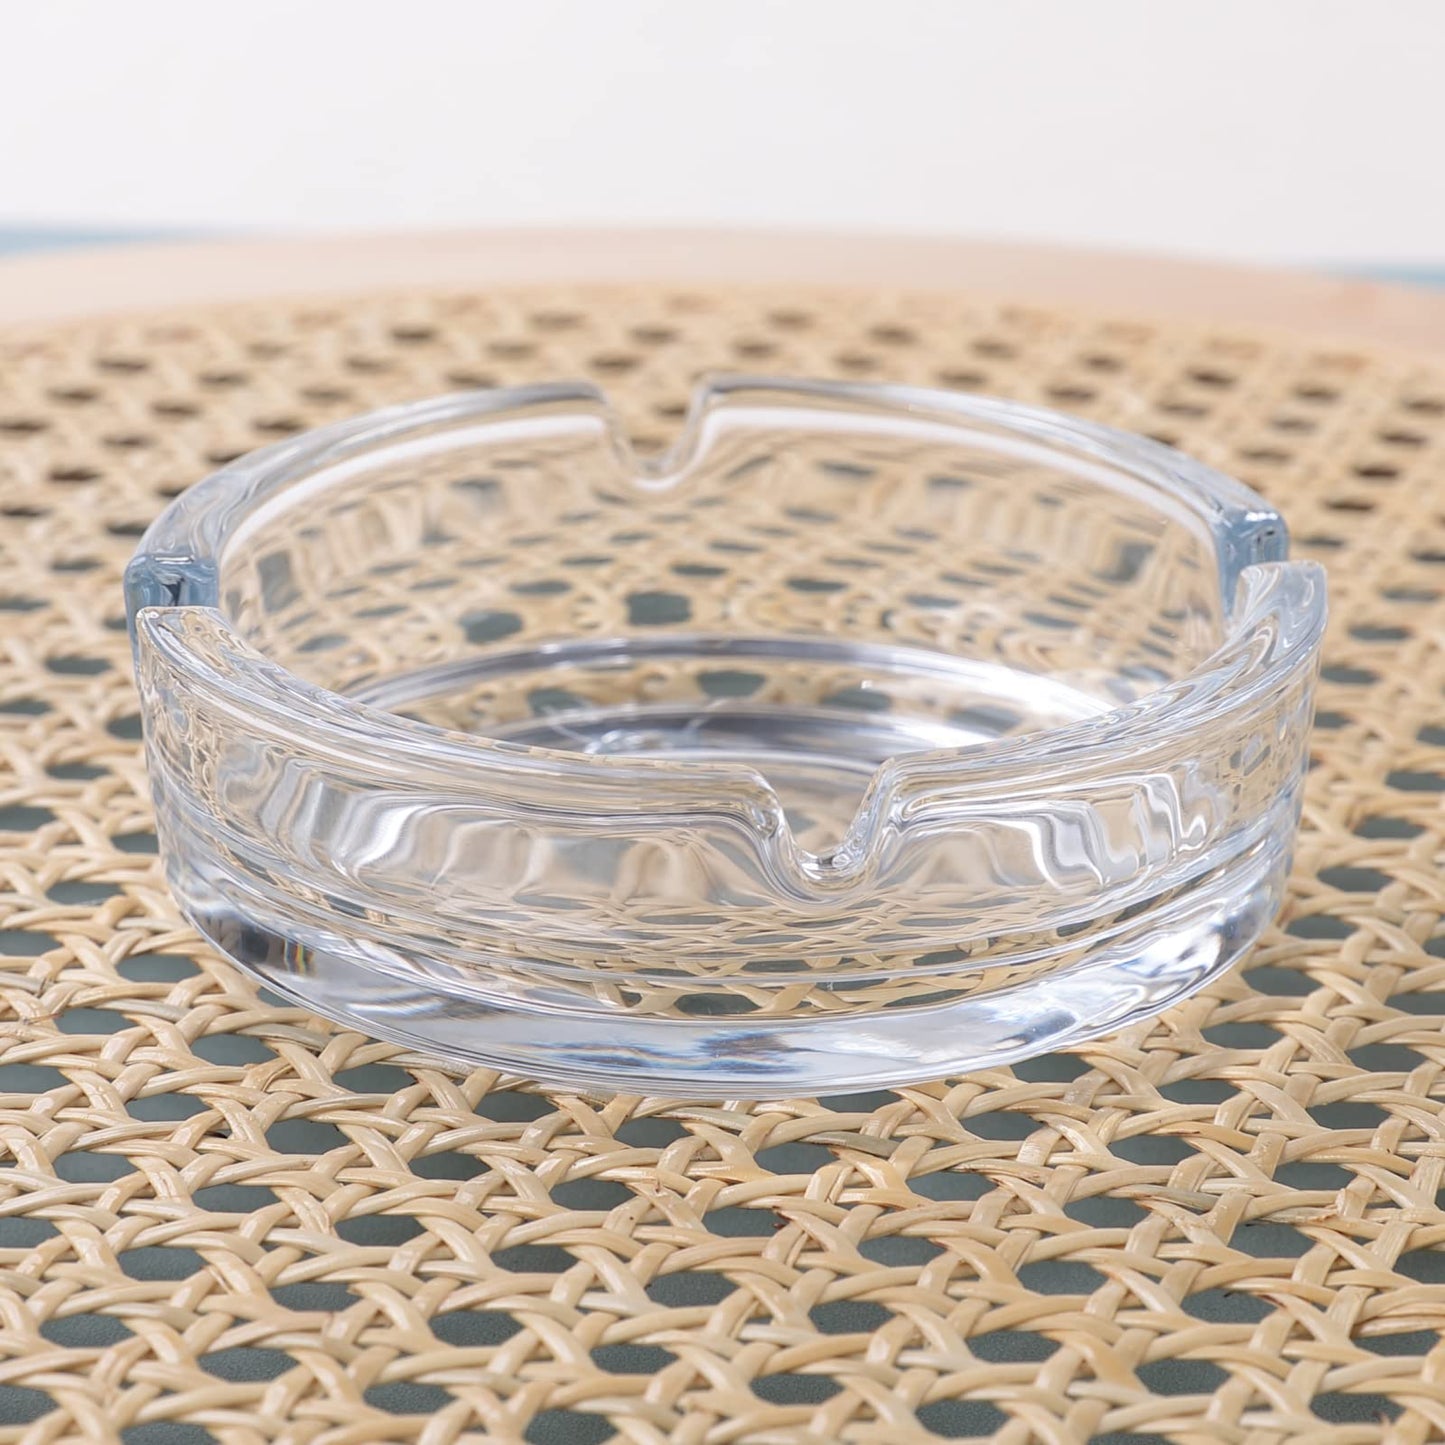 Kuber Industries Decorative Ash tray StylishRound Shape Pack of 2 Transparent